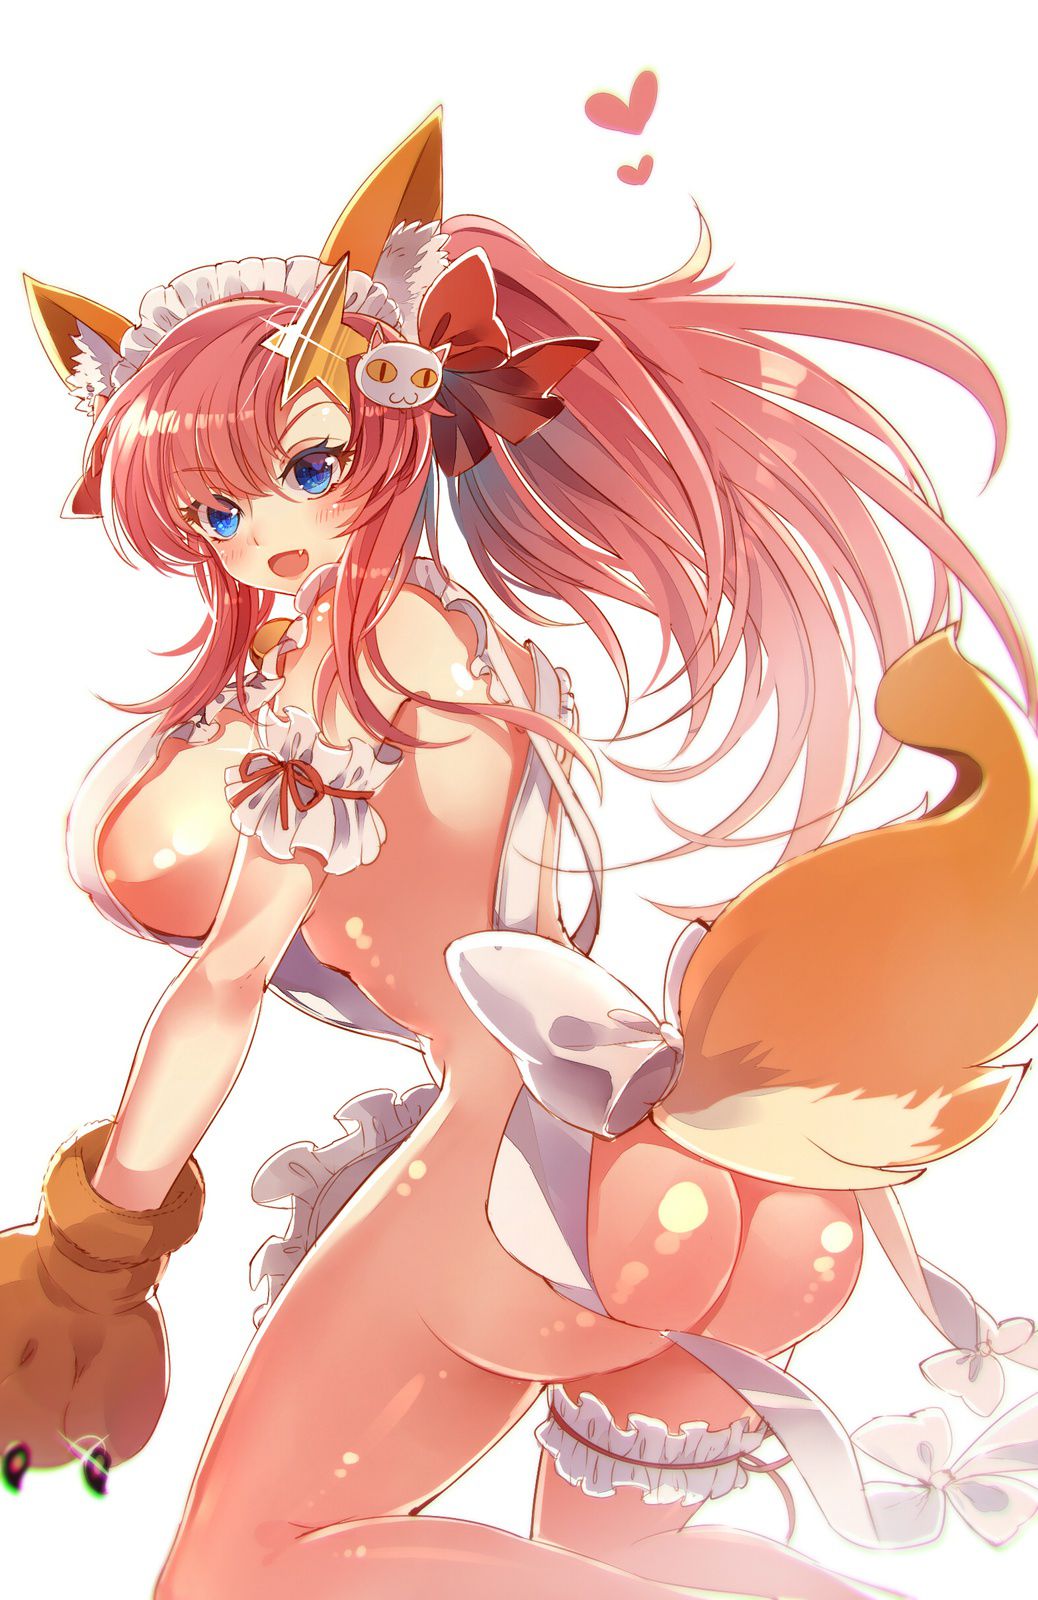 [Fate] erotic image of Tamamo cat 17